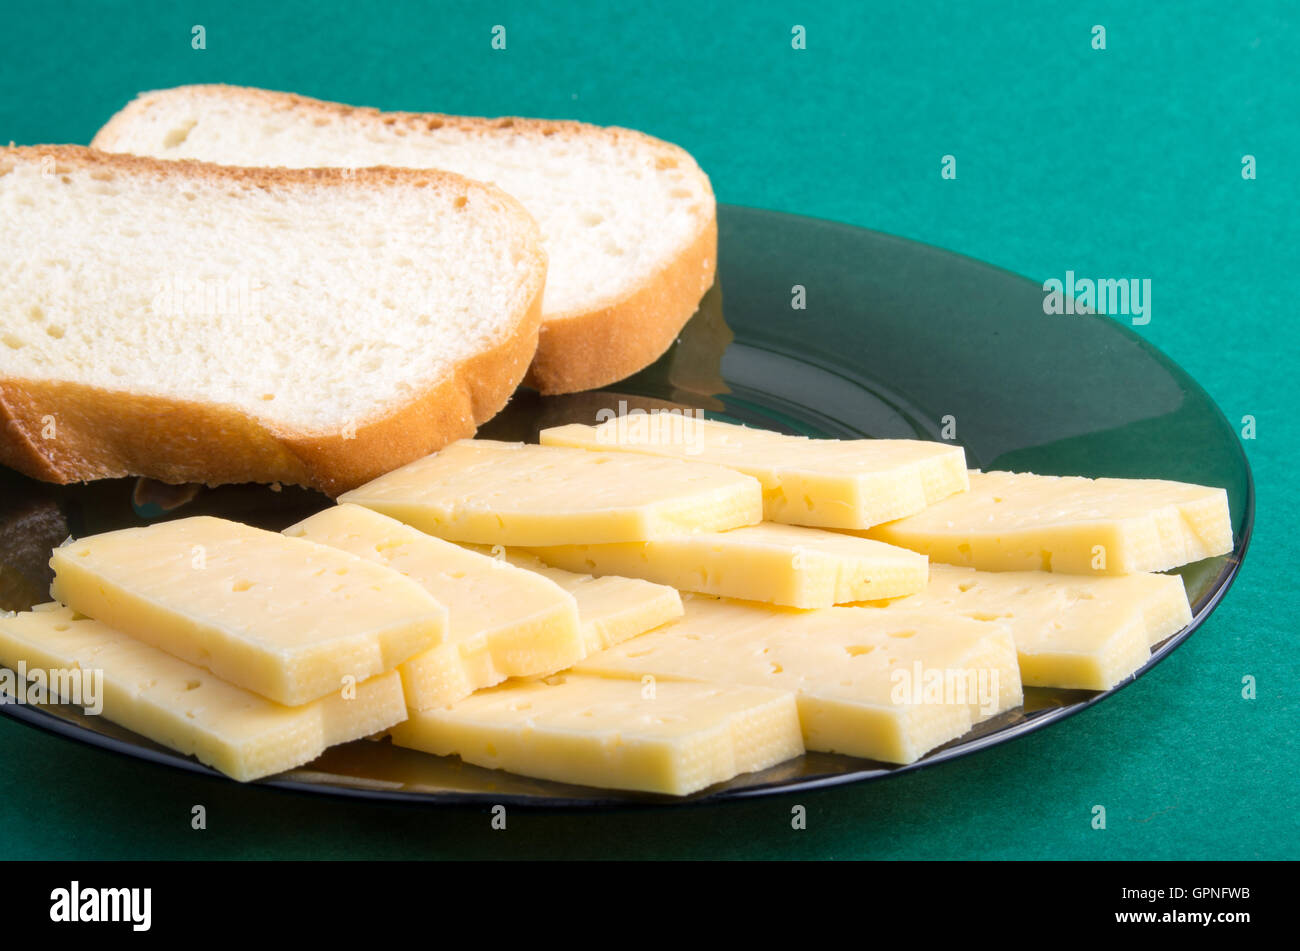 Plaque sur fond vert jaune avec des tranches de fromage et des morceaux de pain blanc libre Banque D'Images